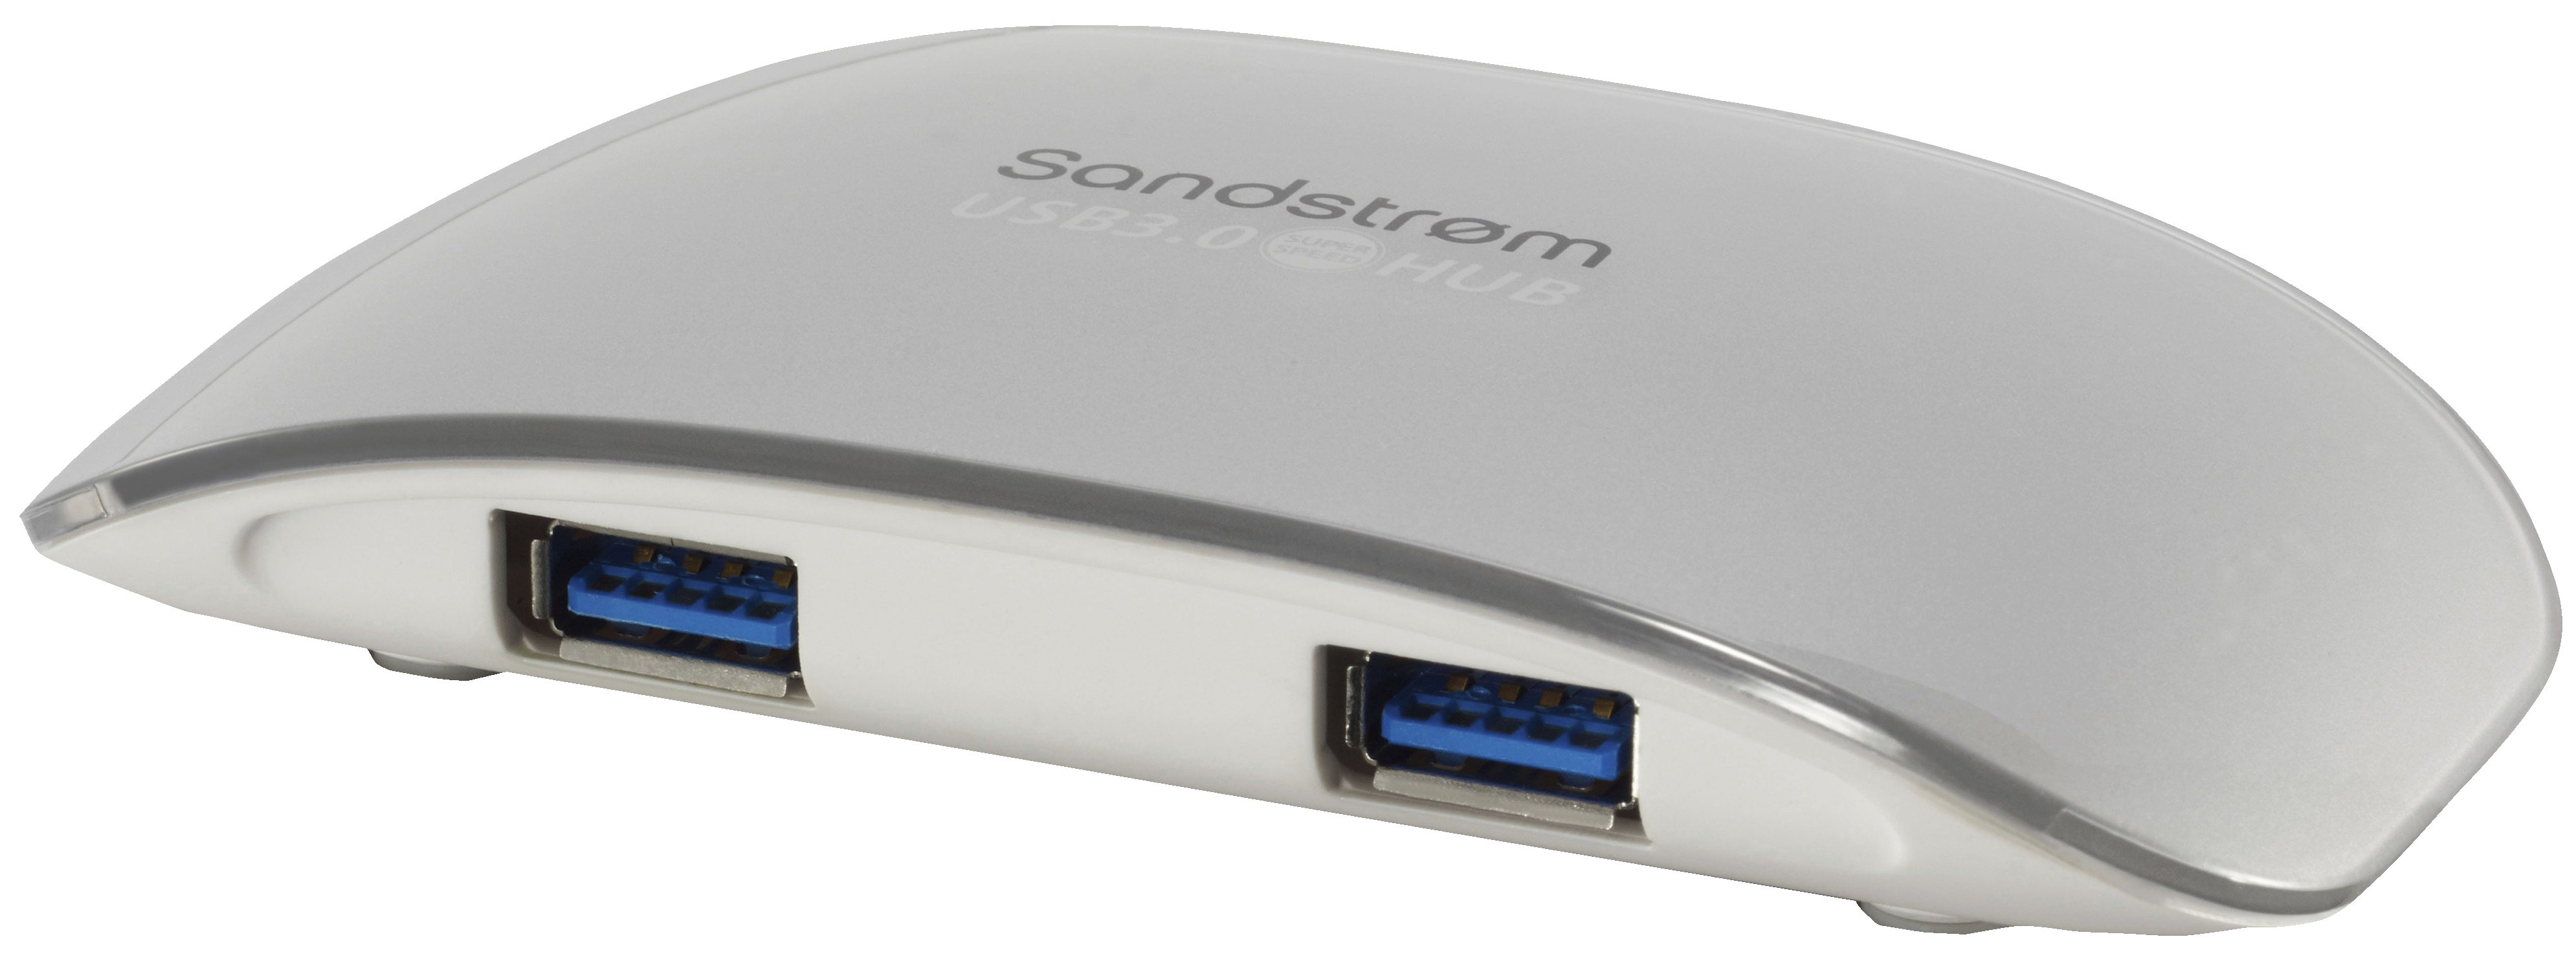 derefter Valg fordom Sandstrøm 4 Port USB 3.0 Hub - Kabler og tilslutning - computer og netværk  - Elgiganten